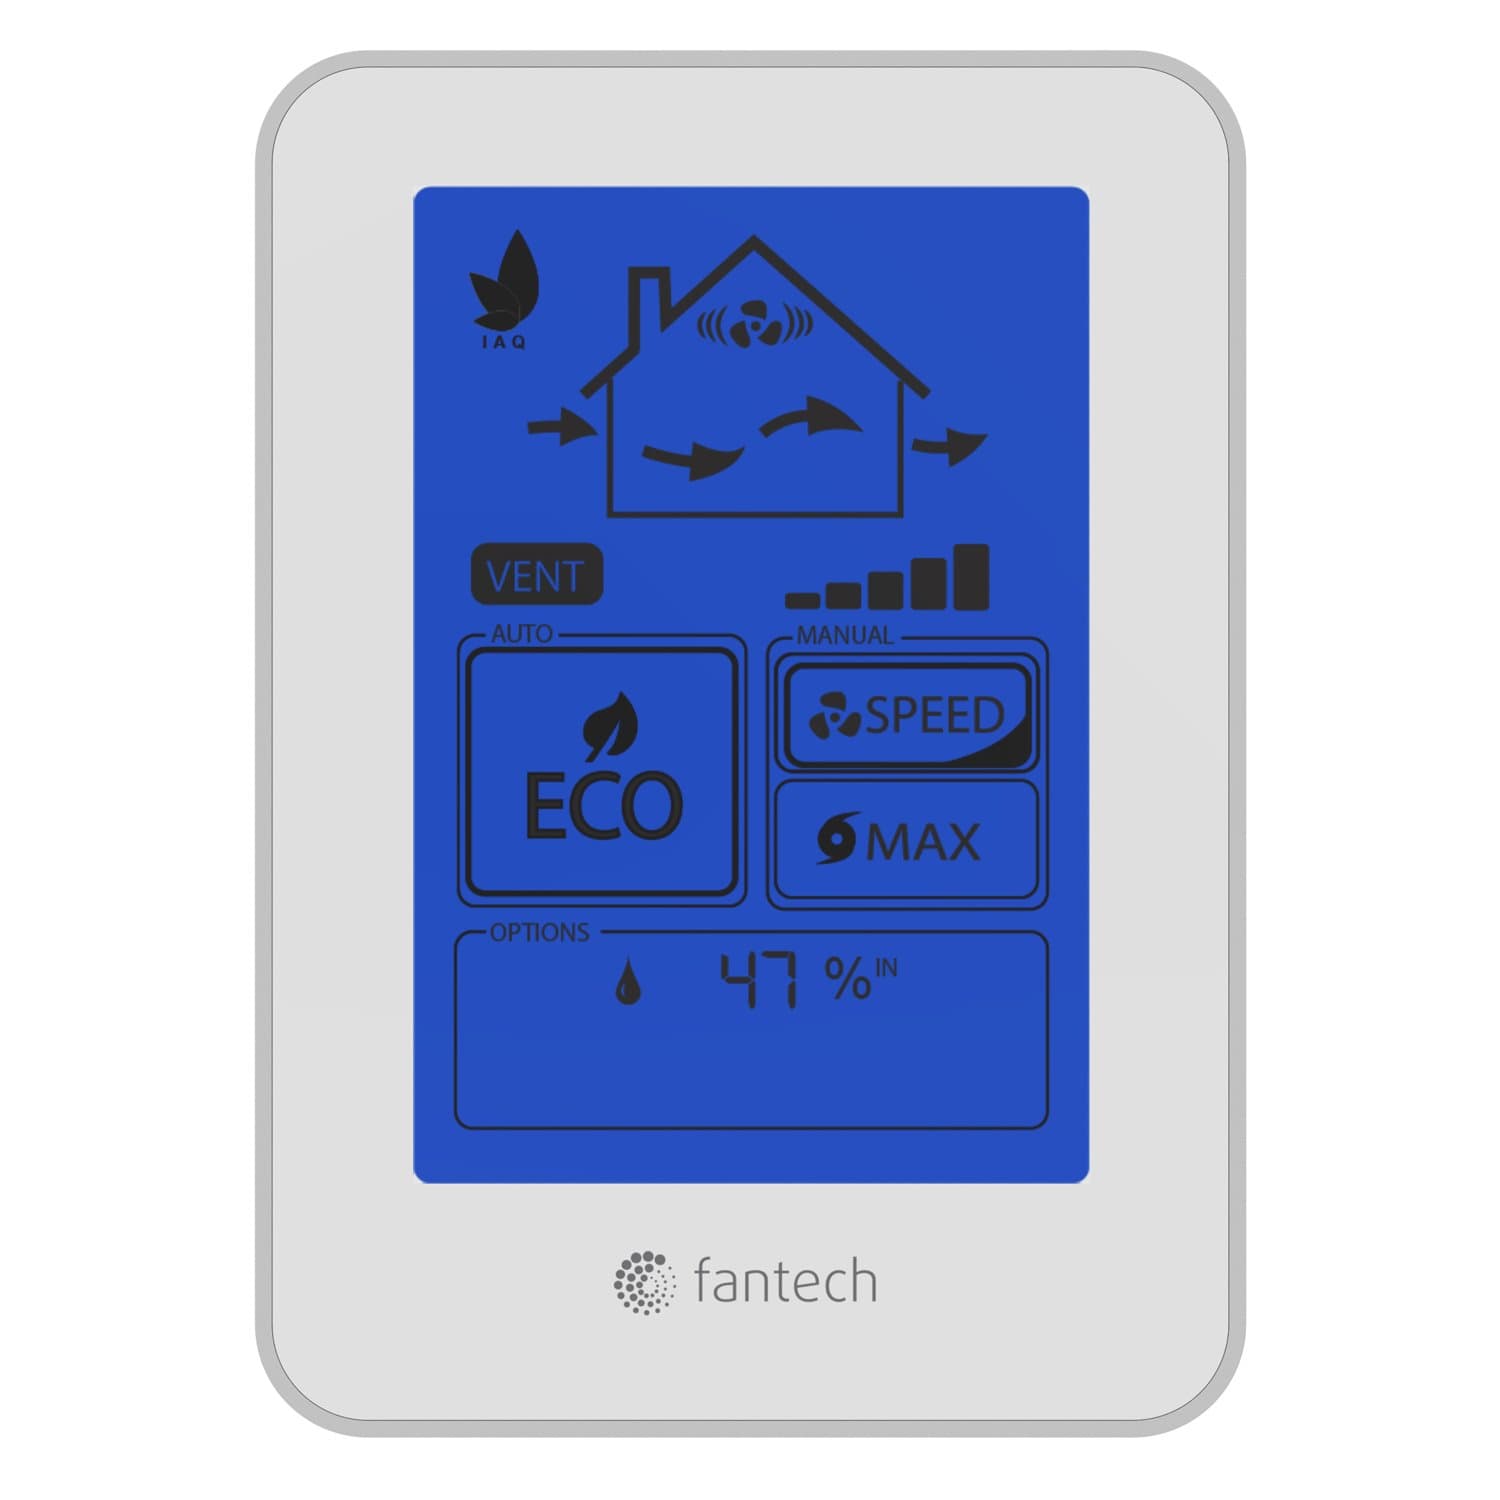 FanTech ECO-TOUCHIAQ Touchscreen Multi-Function Dehumidistat IAQ